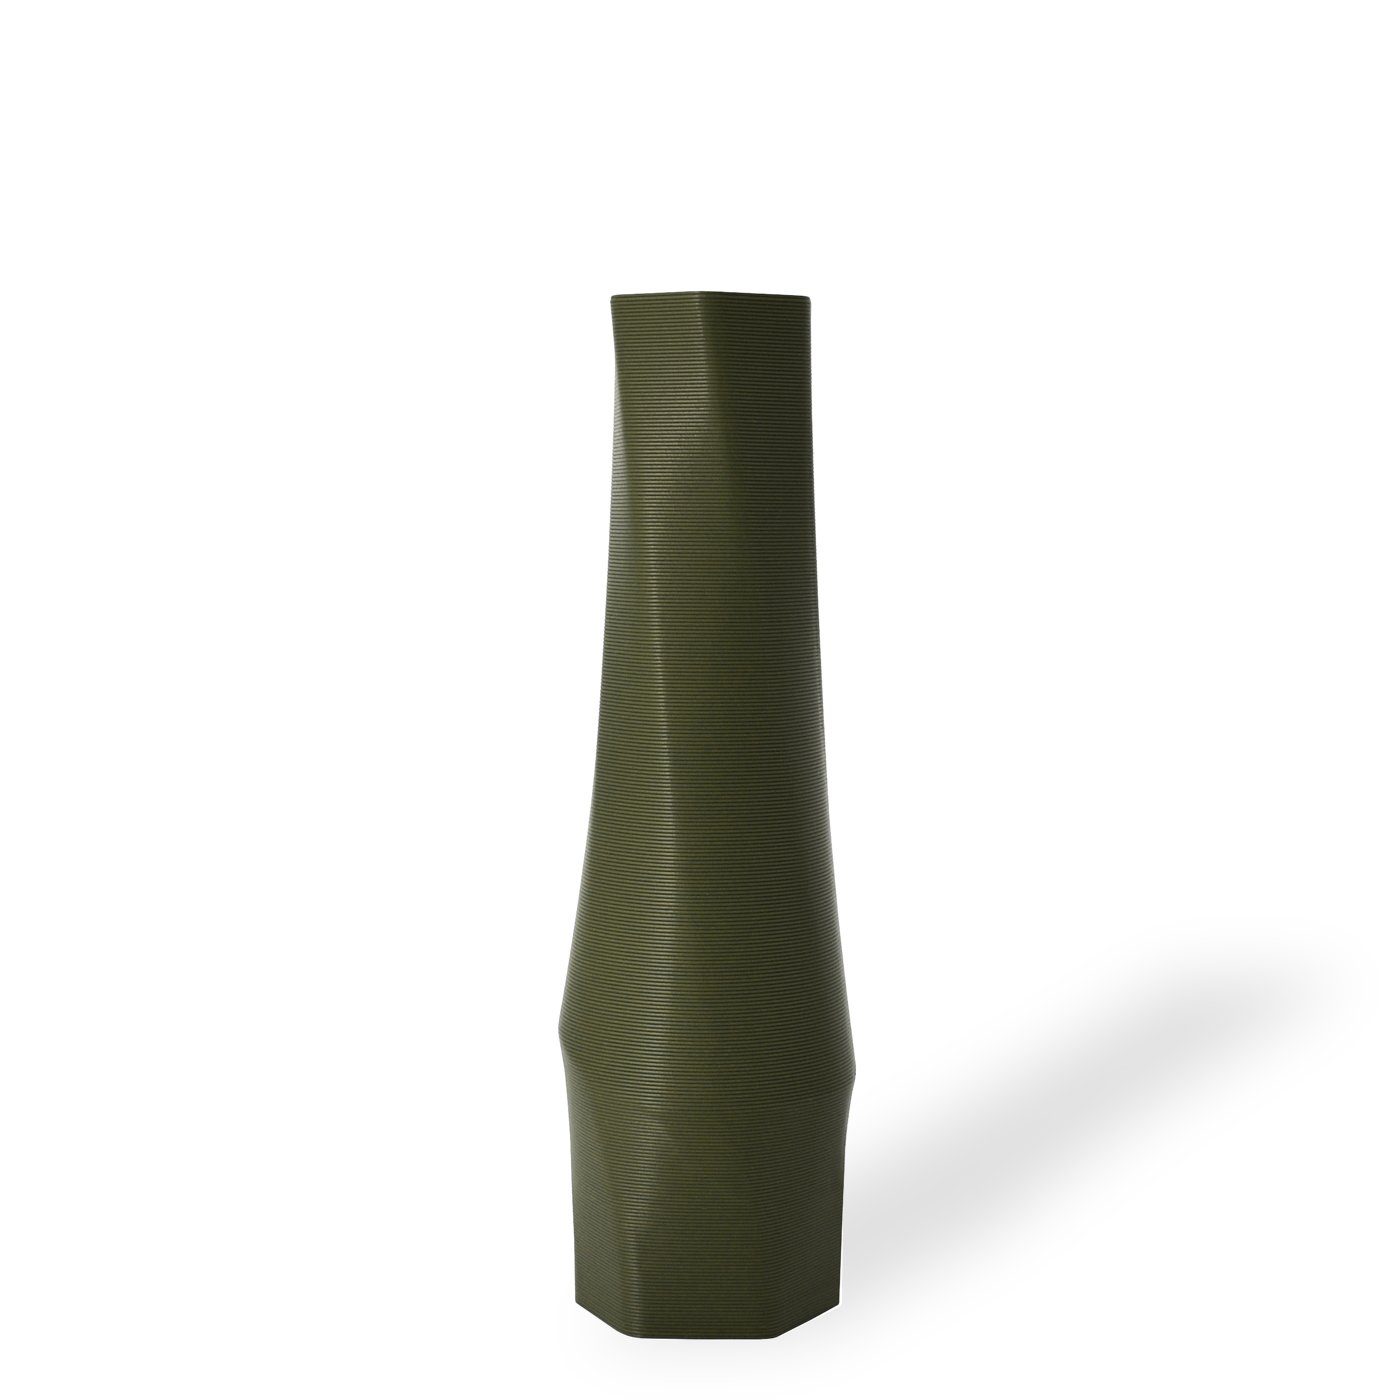 Shapes - Decorations Dekovase the vase - hexagon (basic), 3D Vasen, viele Farben, 100% 3D-Druck (Einzelmodell, 1 Vase), Wasserdicht; Leichte Struktur innerhalb des Materials (Rillung) Olivgrün